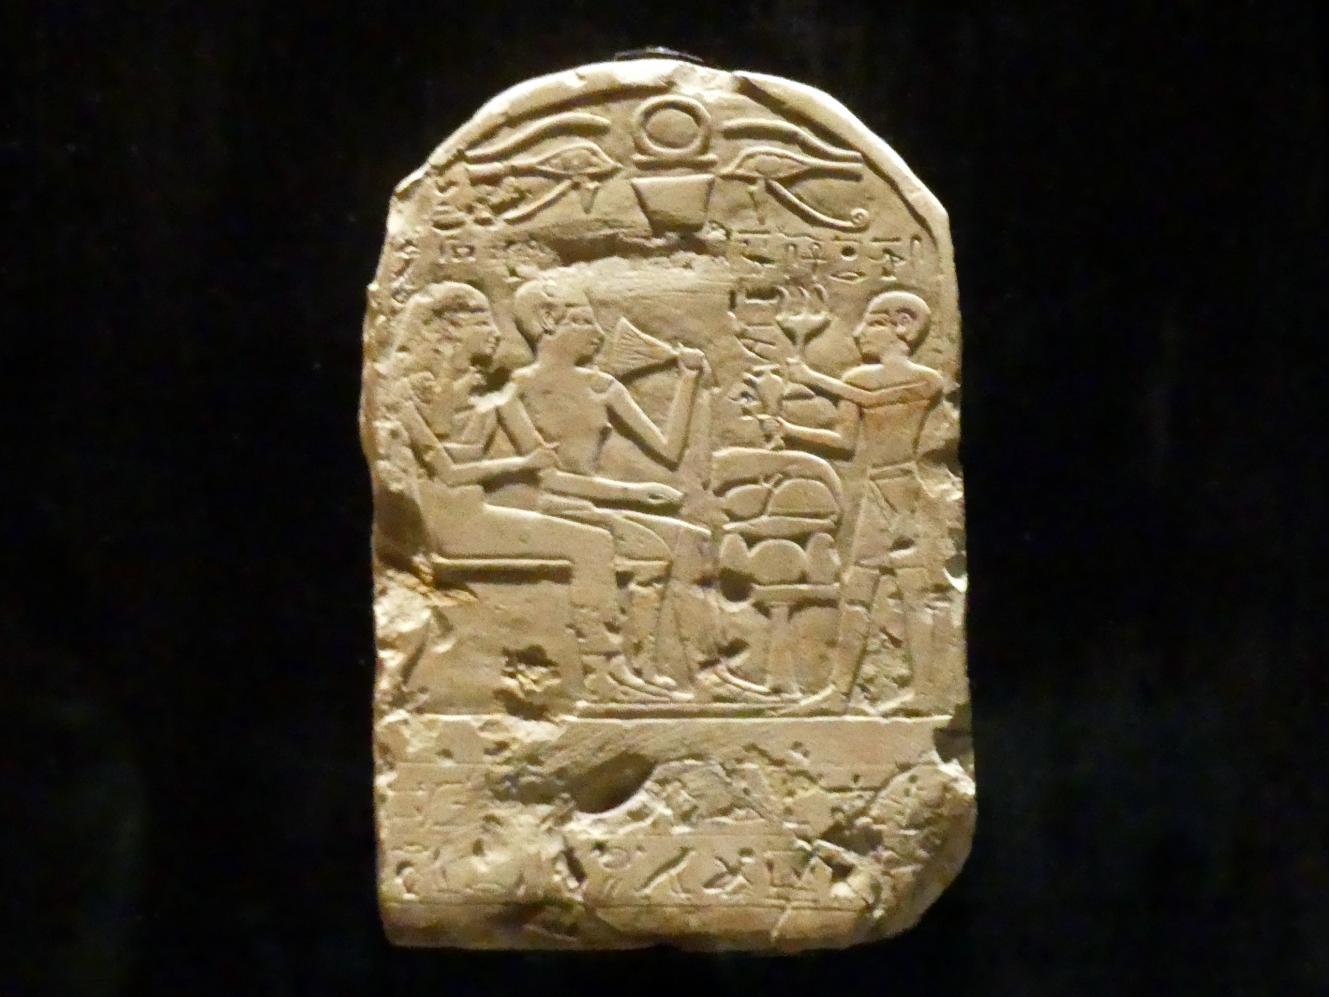 Stele der Tjatja und ihres Mannes, 18. Dynastie, 1210 - 966 v. Chr., 1600 v. Chr.